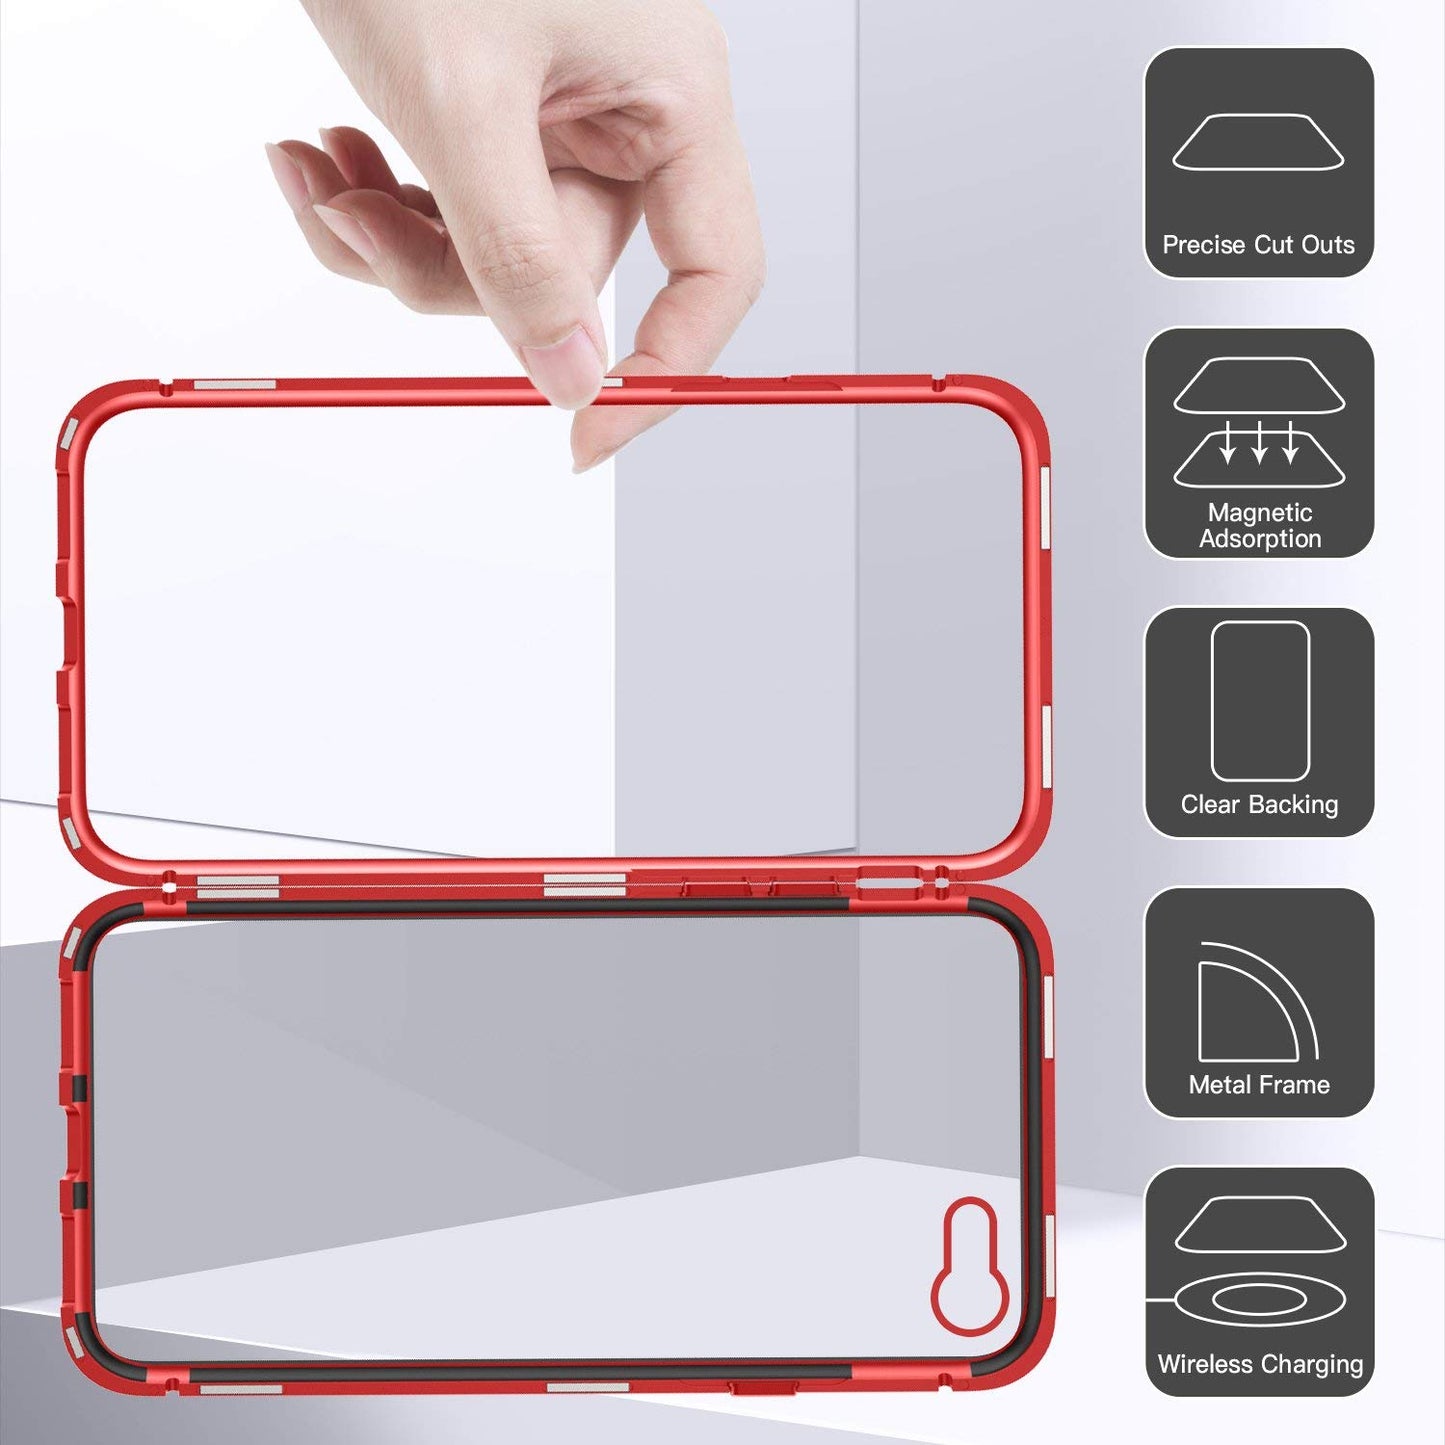 Aviato Magnetic Aluminum Case für iPhone 8 - 7